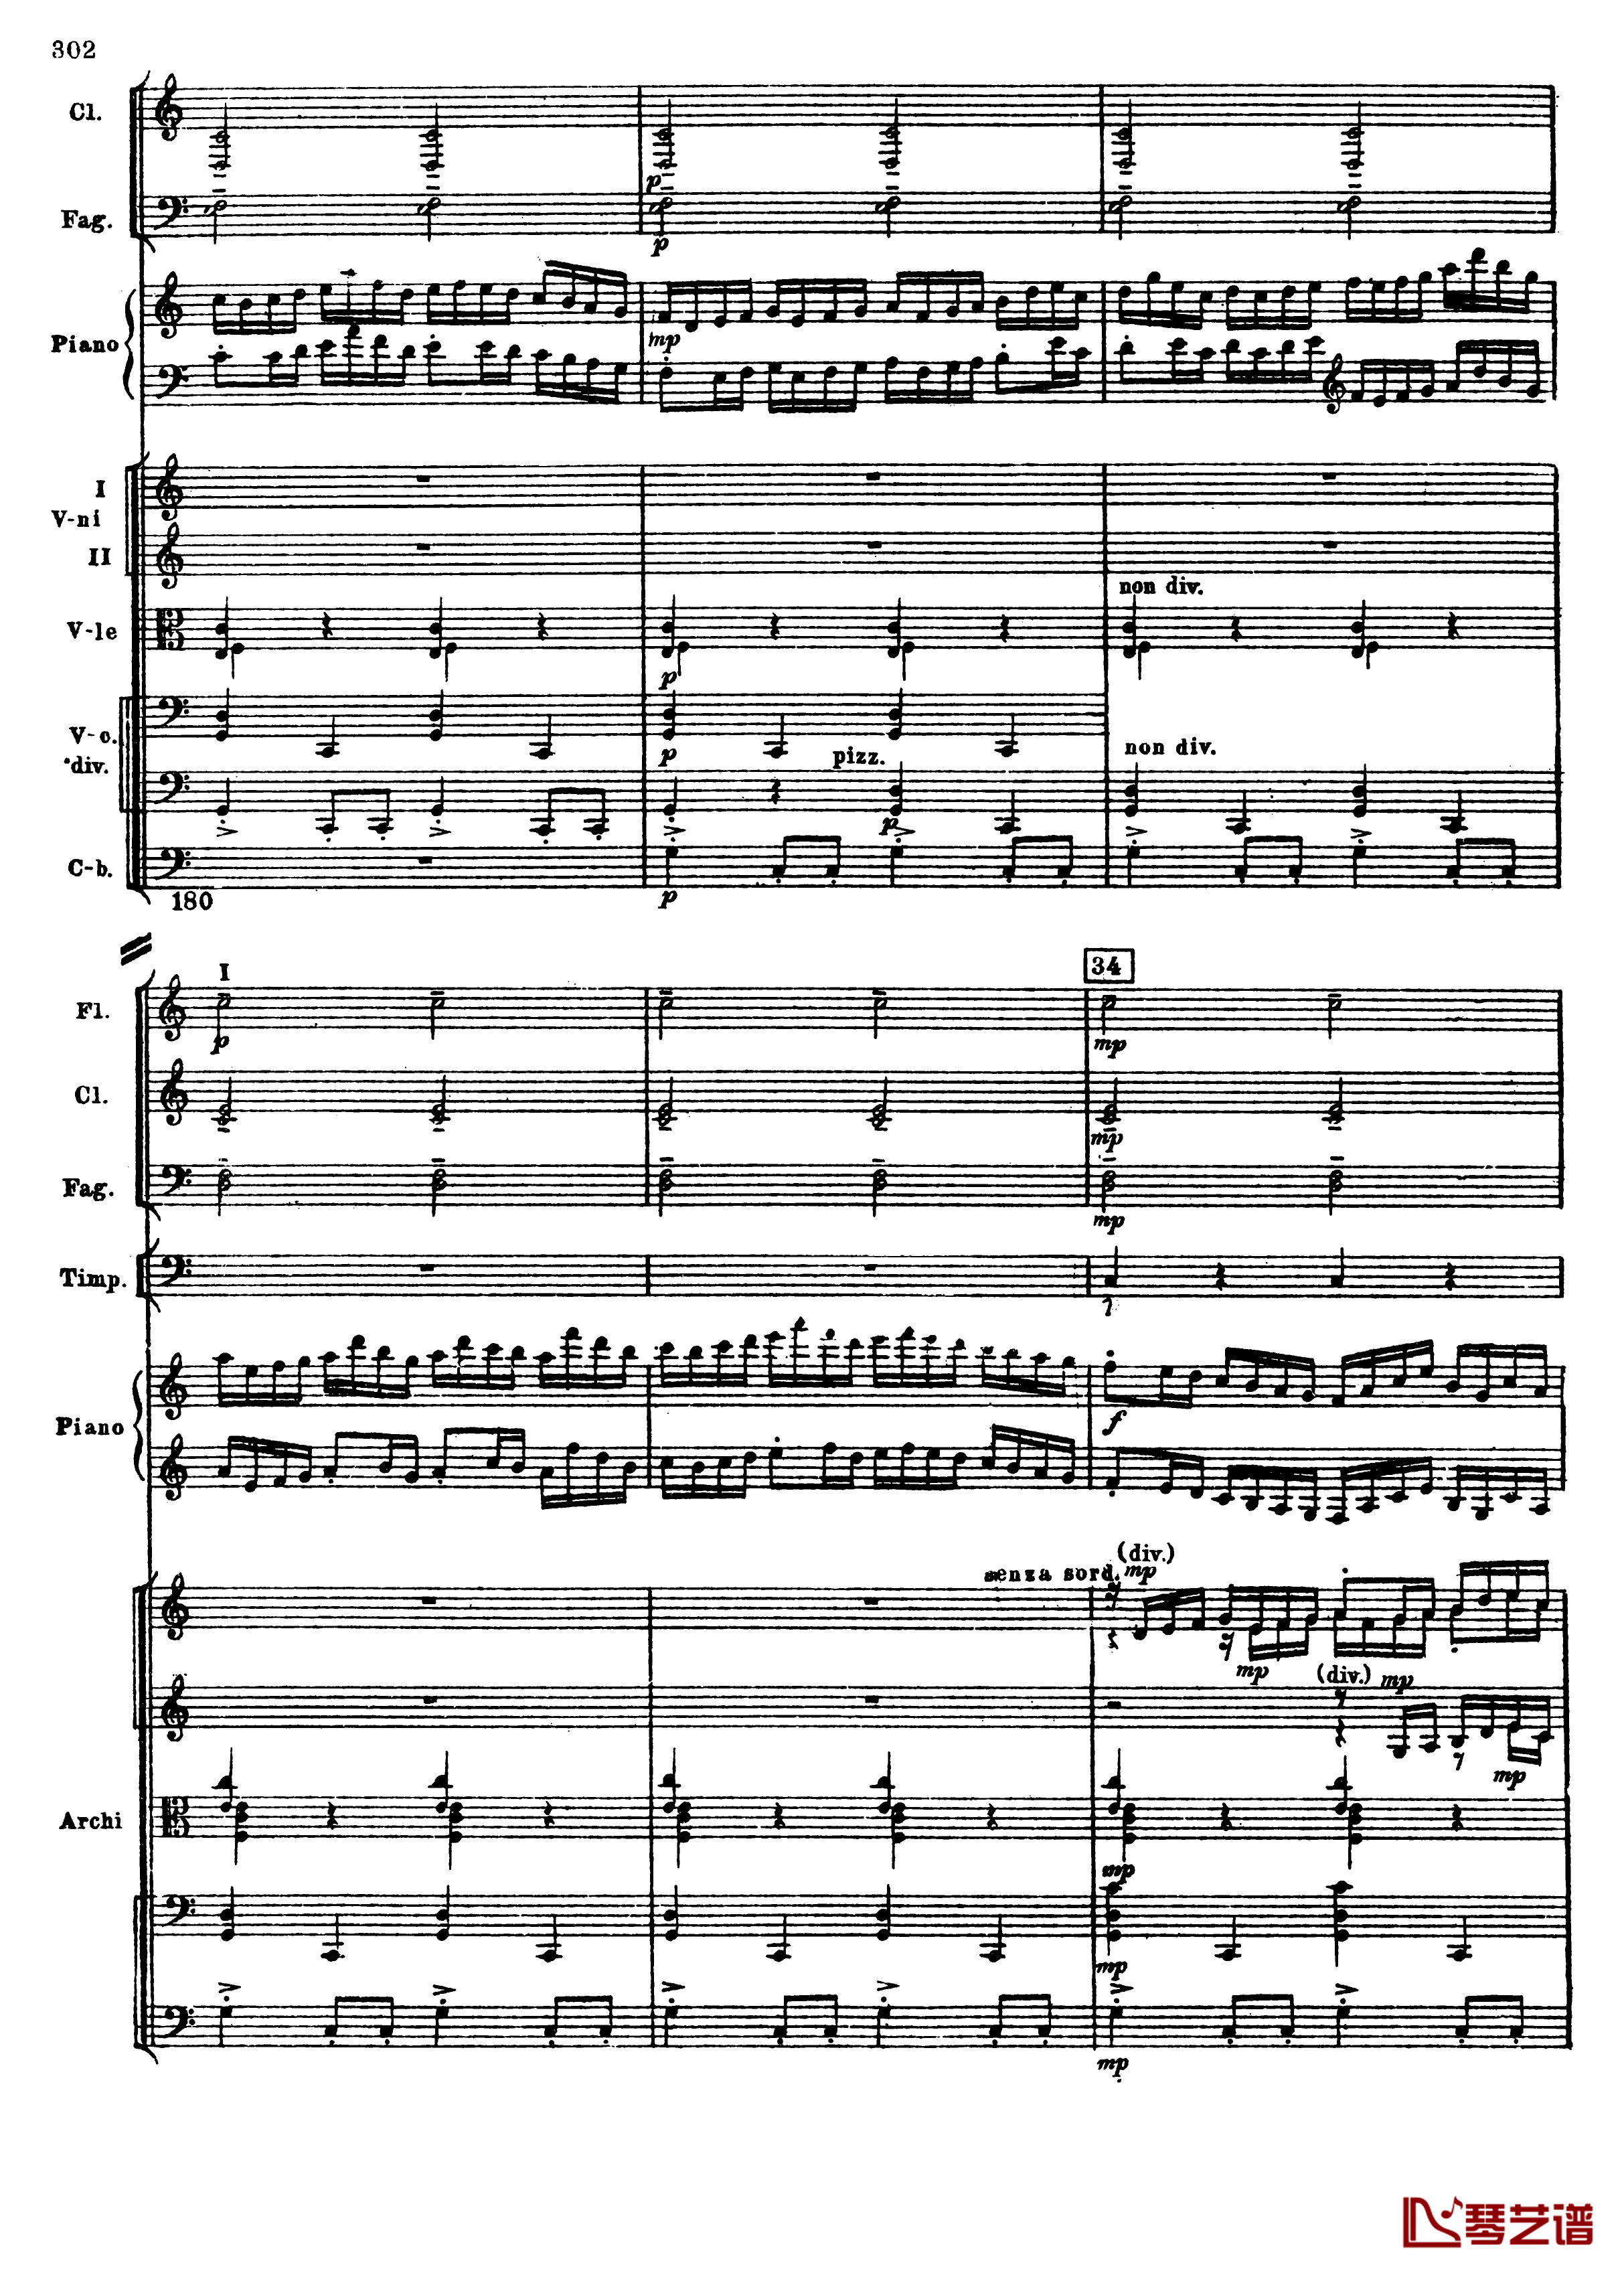 普罗科菲耶夫第三钢琴协奏曲钢琴谱-总谱-普罗科非耶夫34